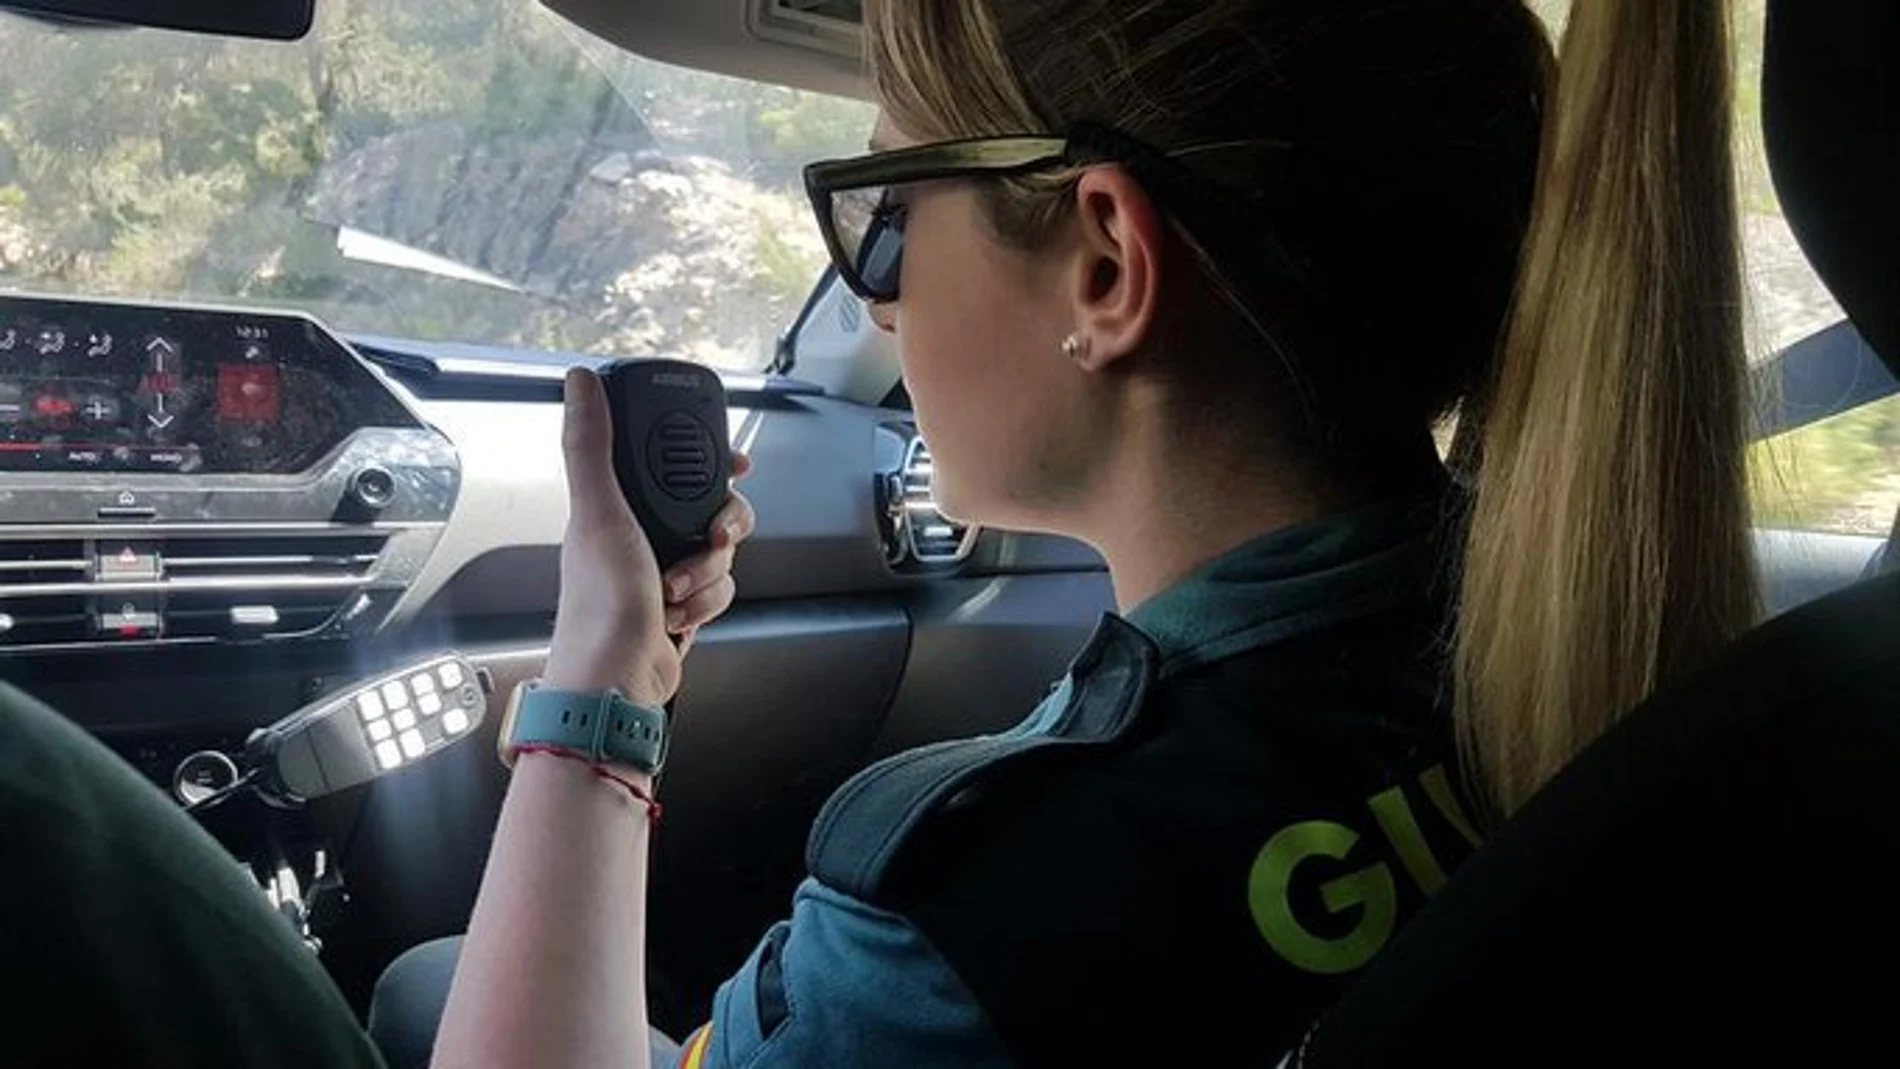 La Guardia Civil rescata en Ibiza a una niña de 3 años encerrada en un coche tras perder su madre las llaves